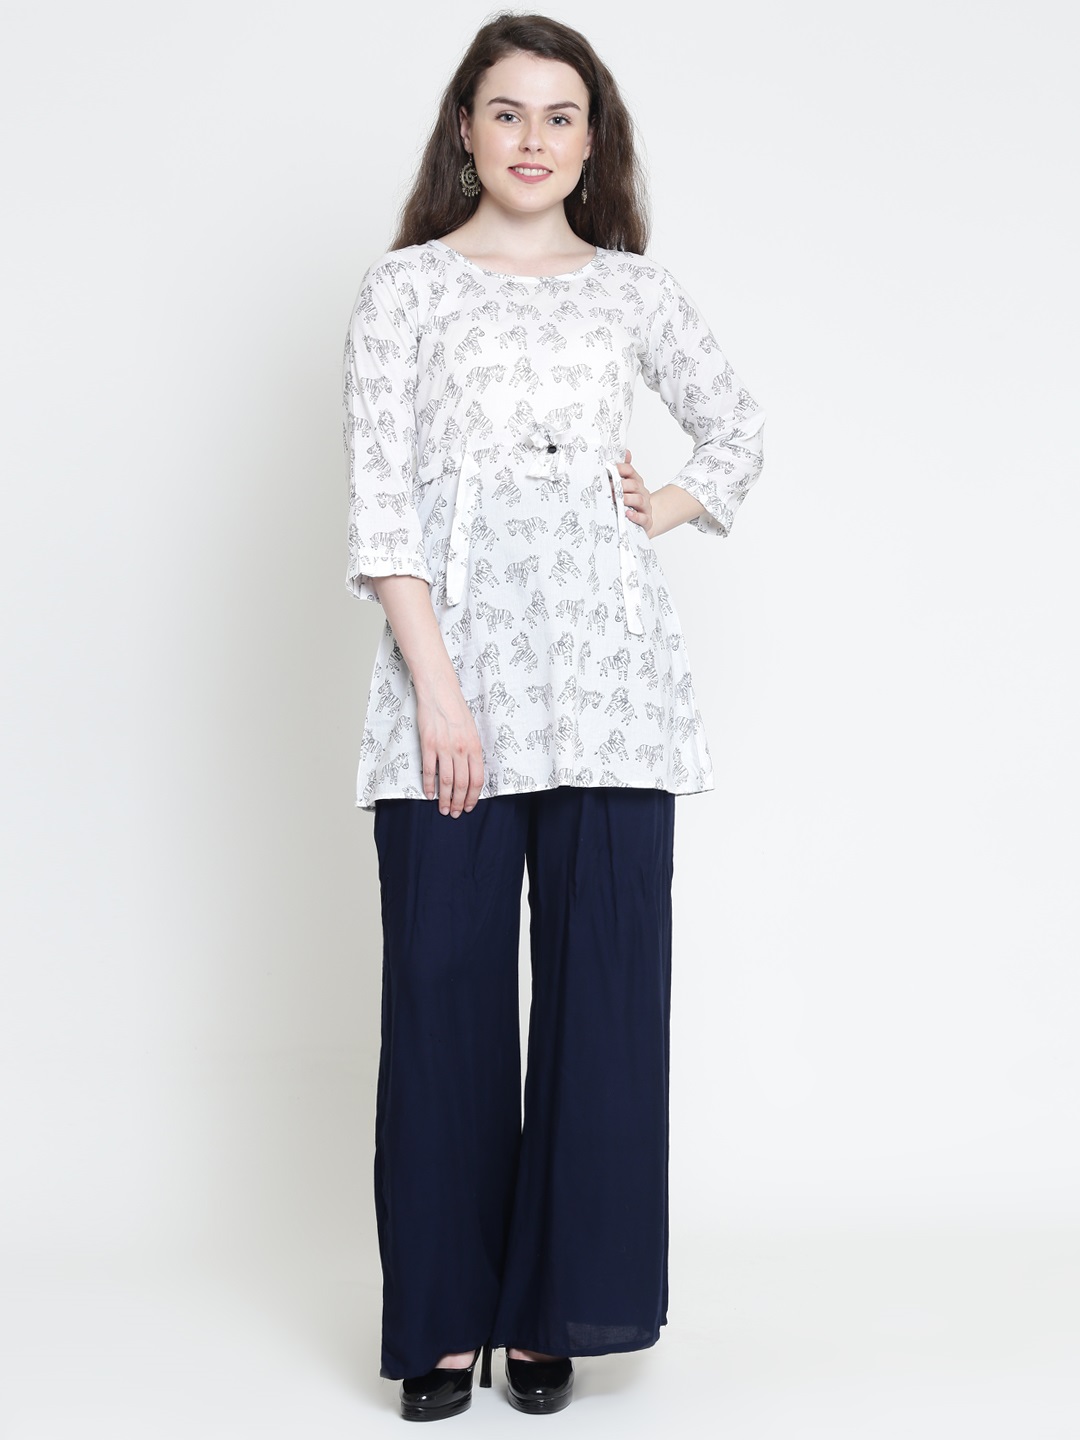 Madamita White Short Kurti & Pajama Set, Size: S:m:l:xl at Rs 600/set in  Jaipur